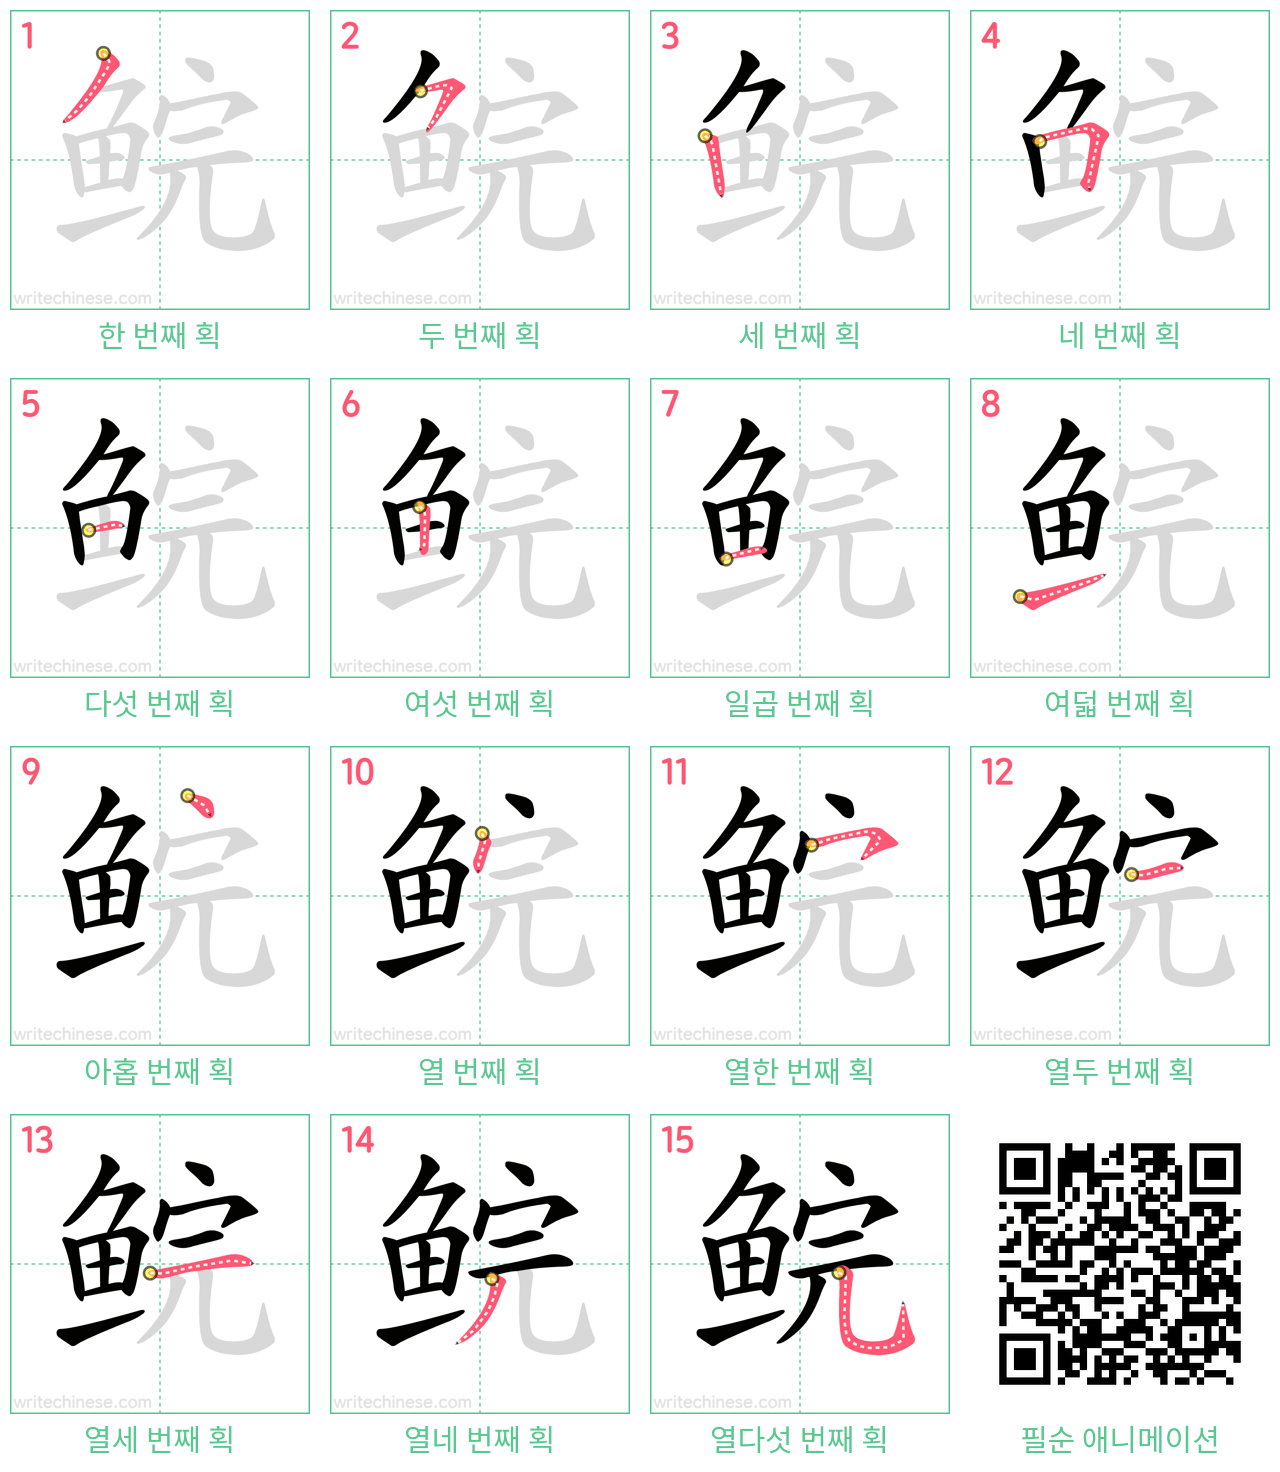 鲩 step-by-step stroke order diagrams